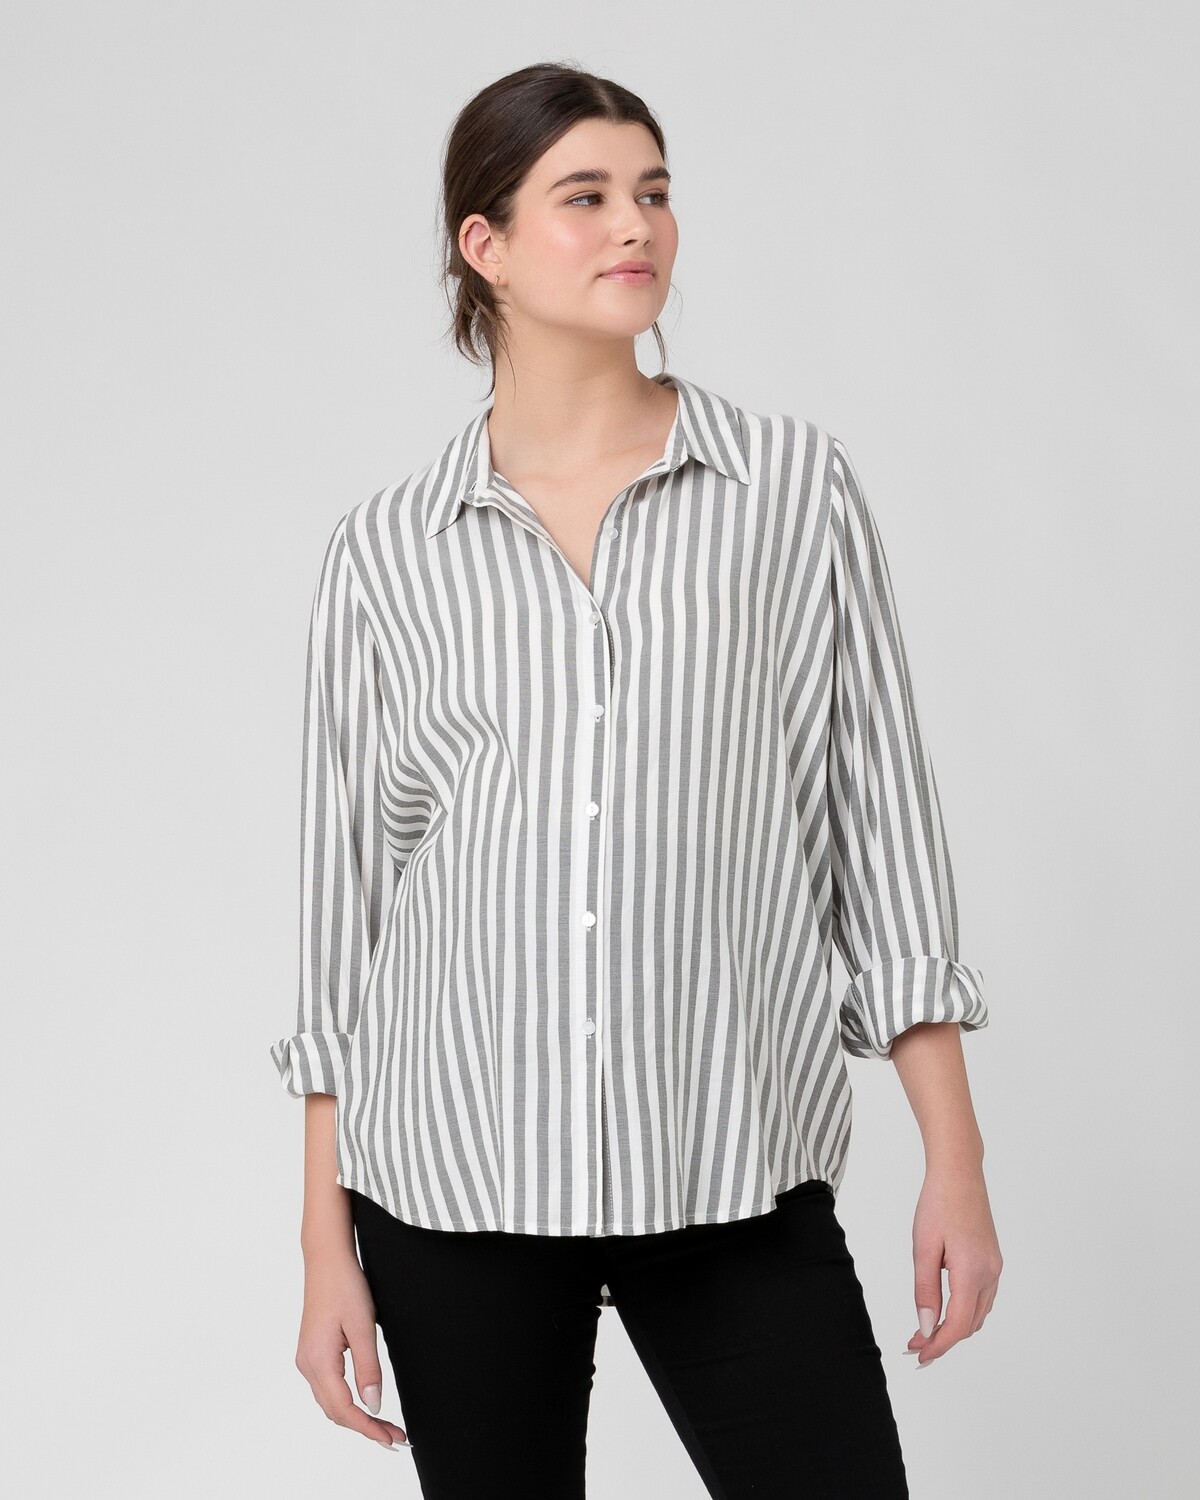 Lou Stripe Shirt, Color: Black/White, Size: M